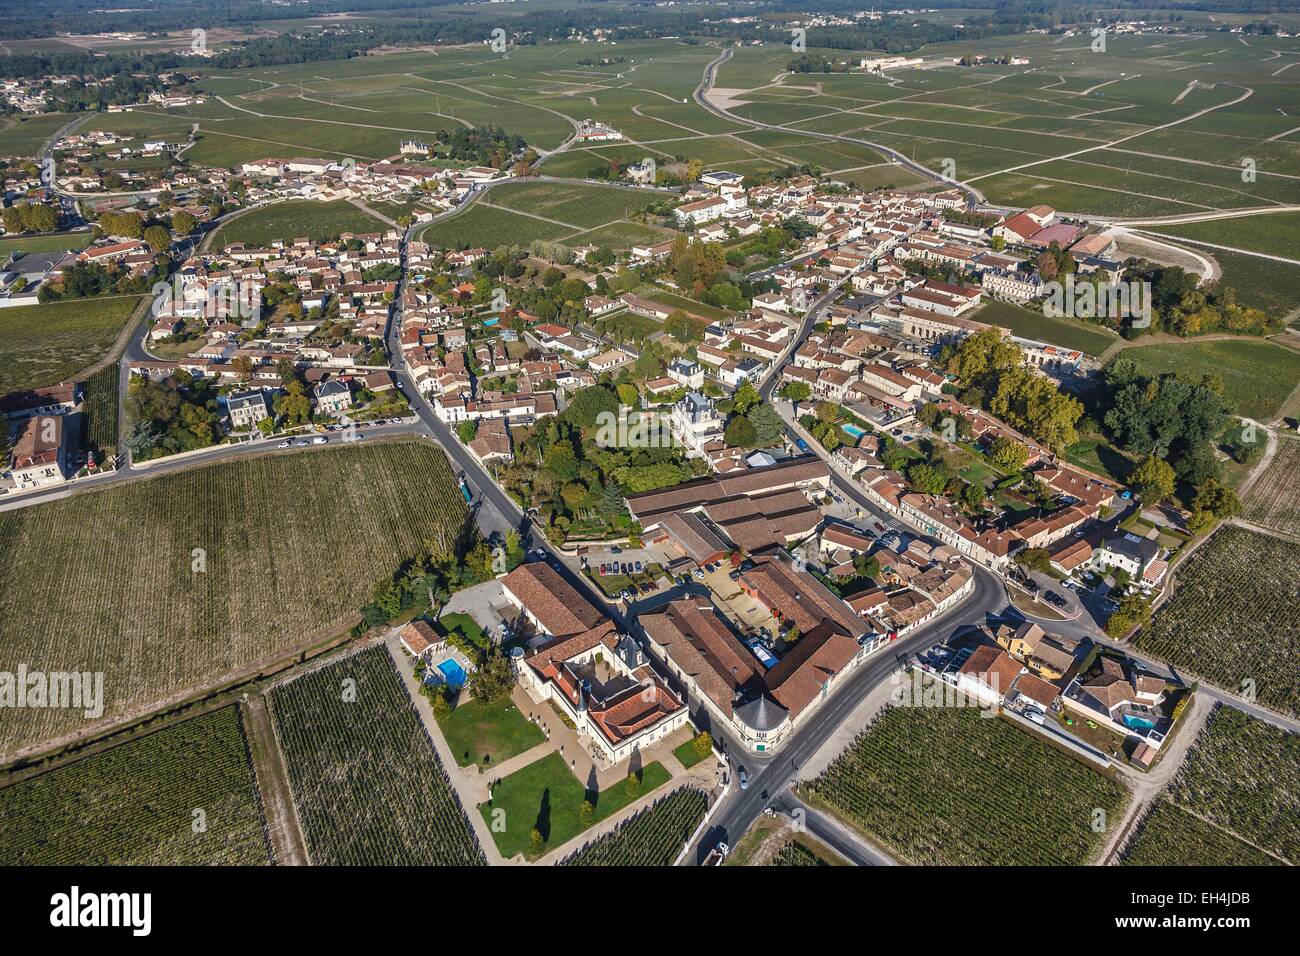 France, Gironde, Margaux, le village entouré de vignobles de Margaux (vue aérienne) Banque D'Images